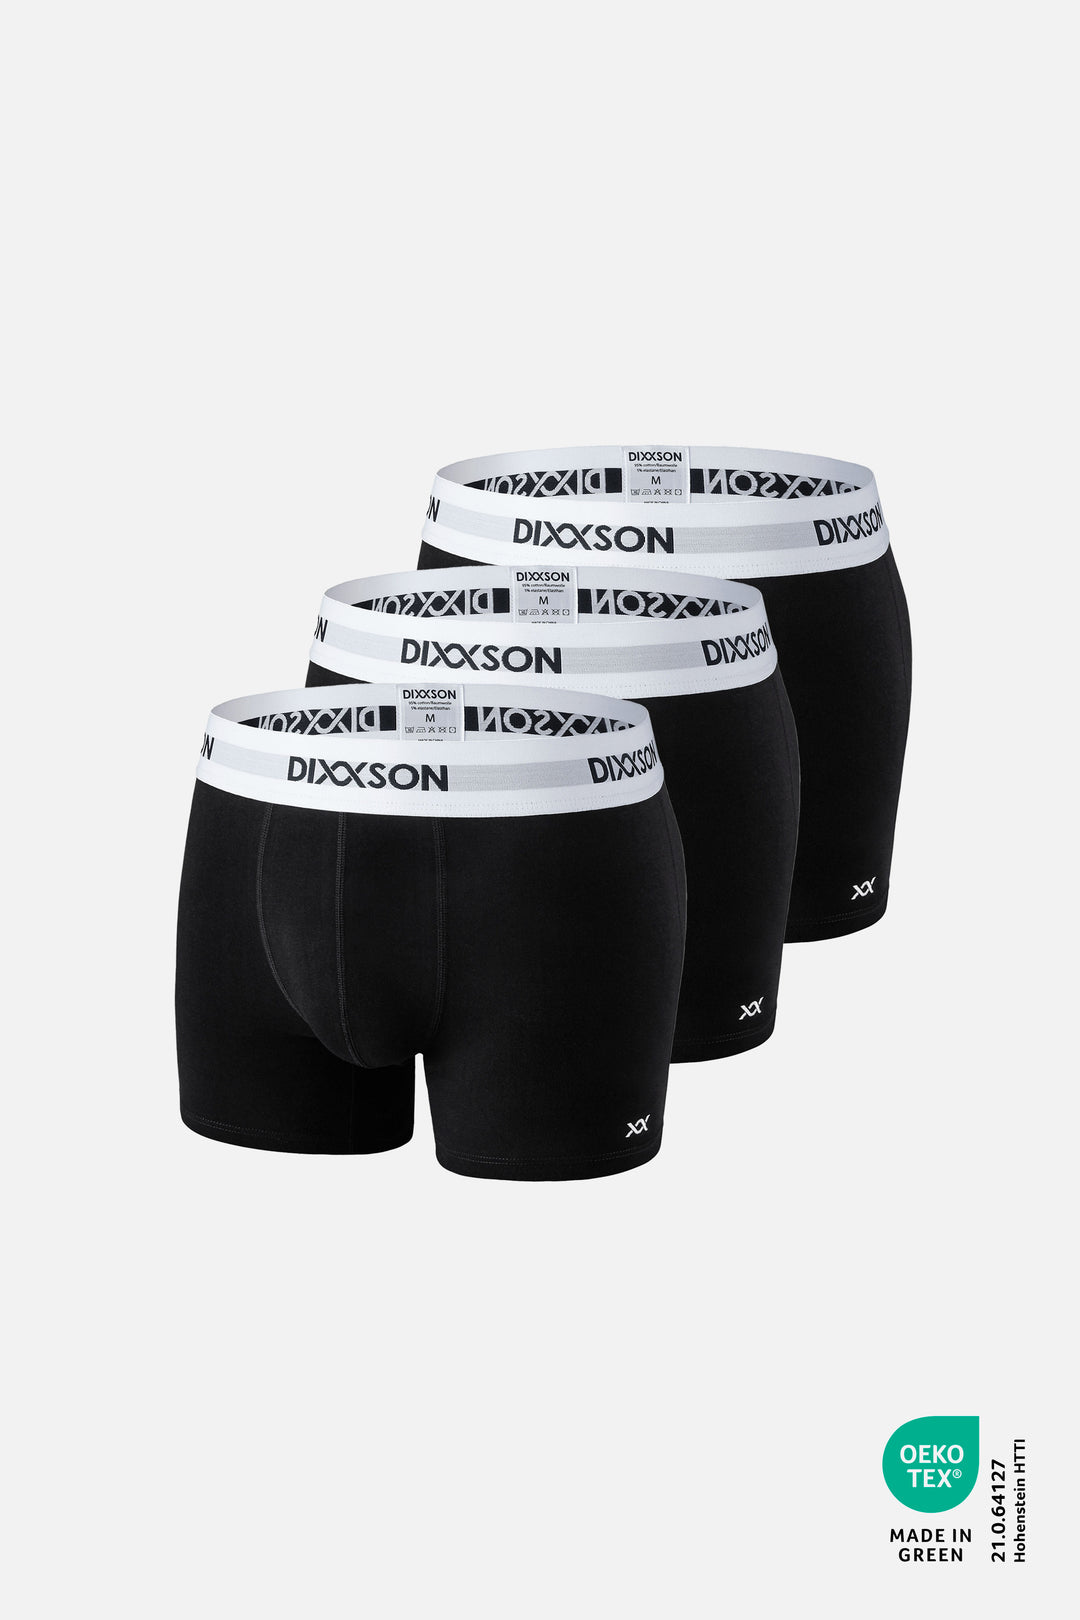 DIXXSON Premium Boxershorts für Herren 3er Pack schwarz